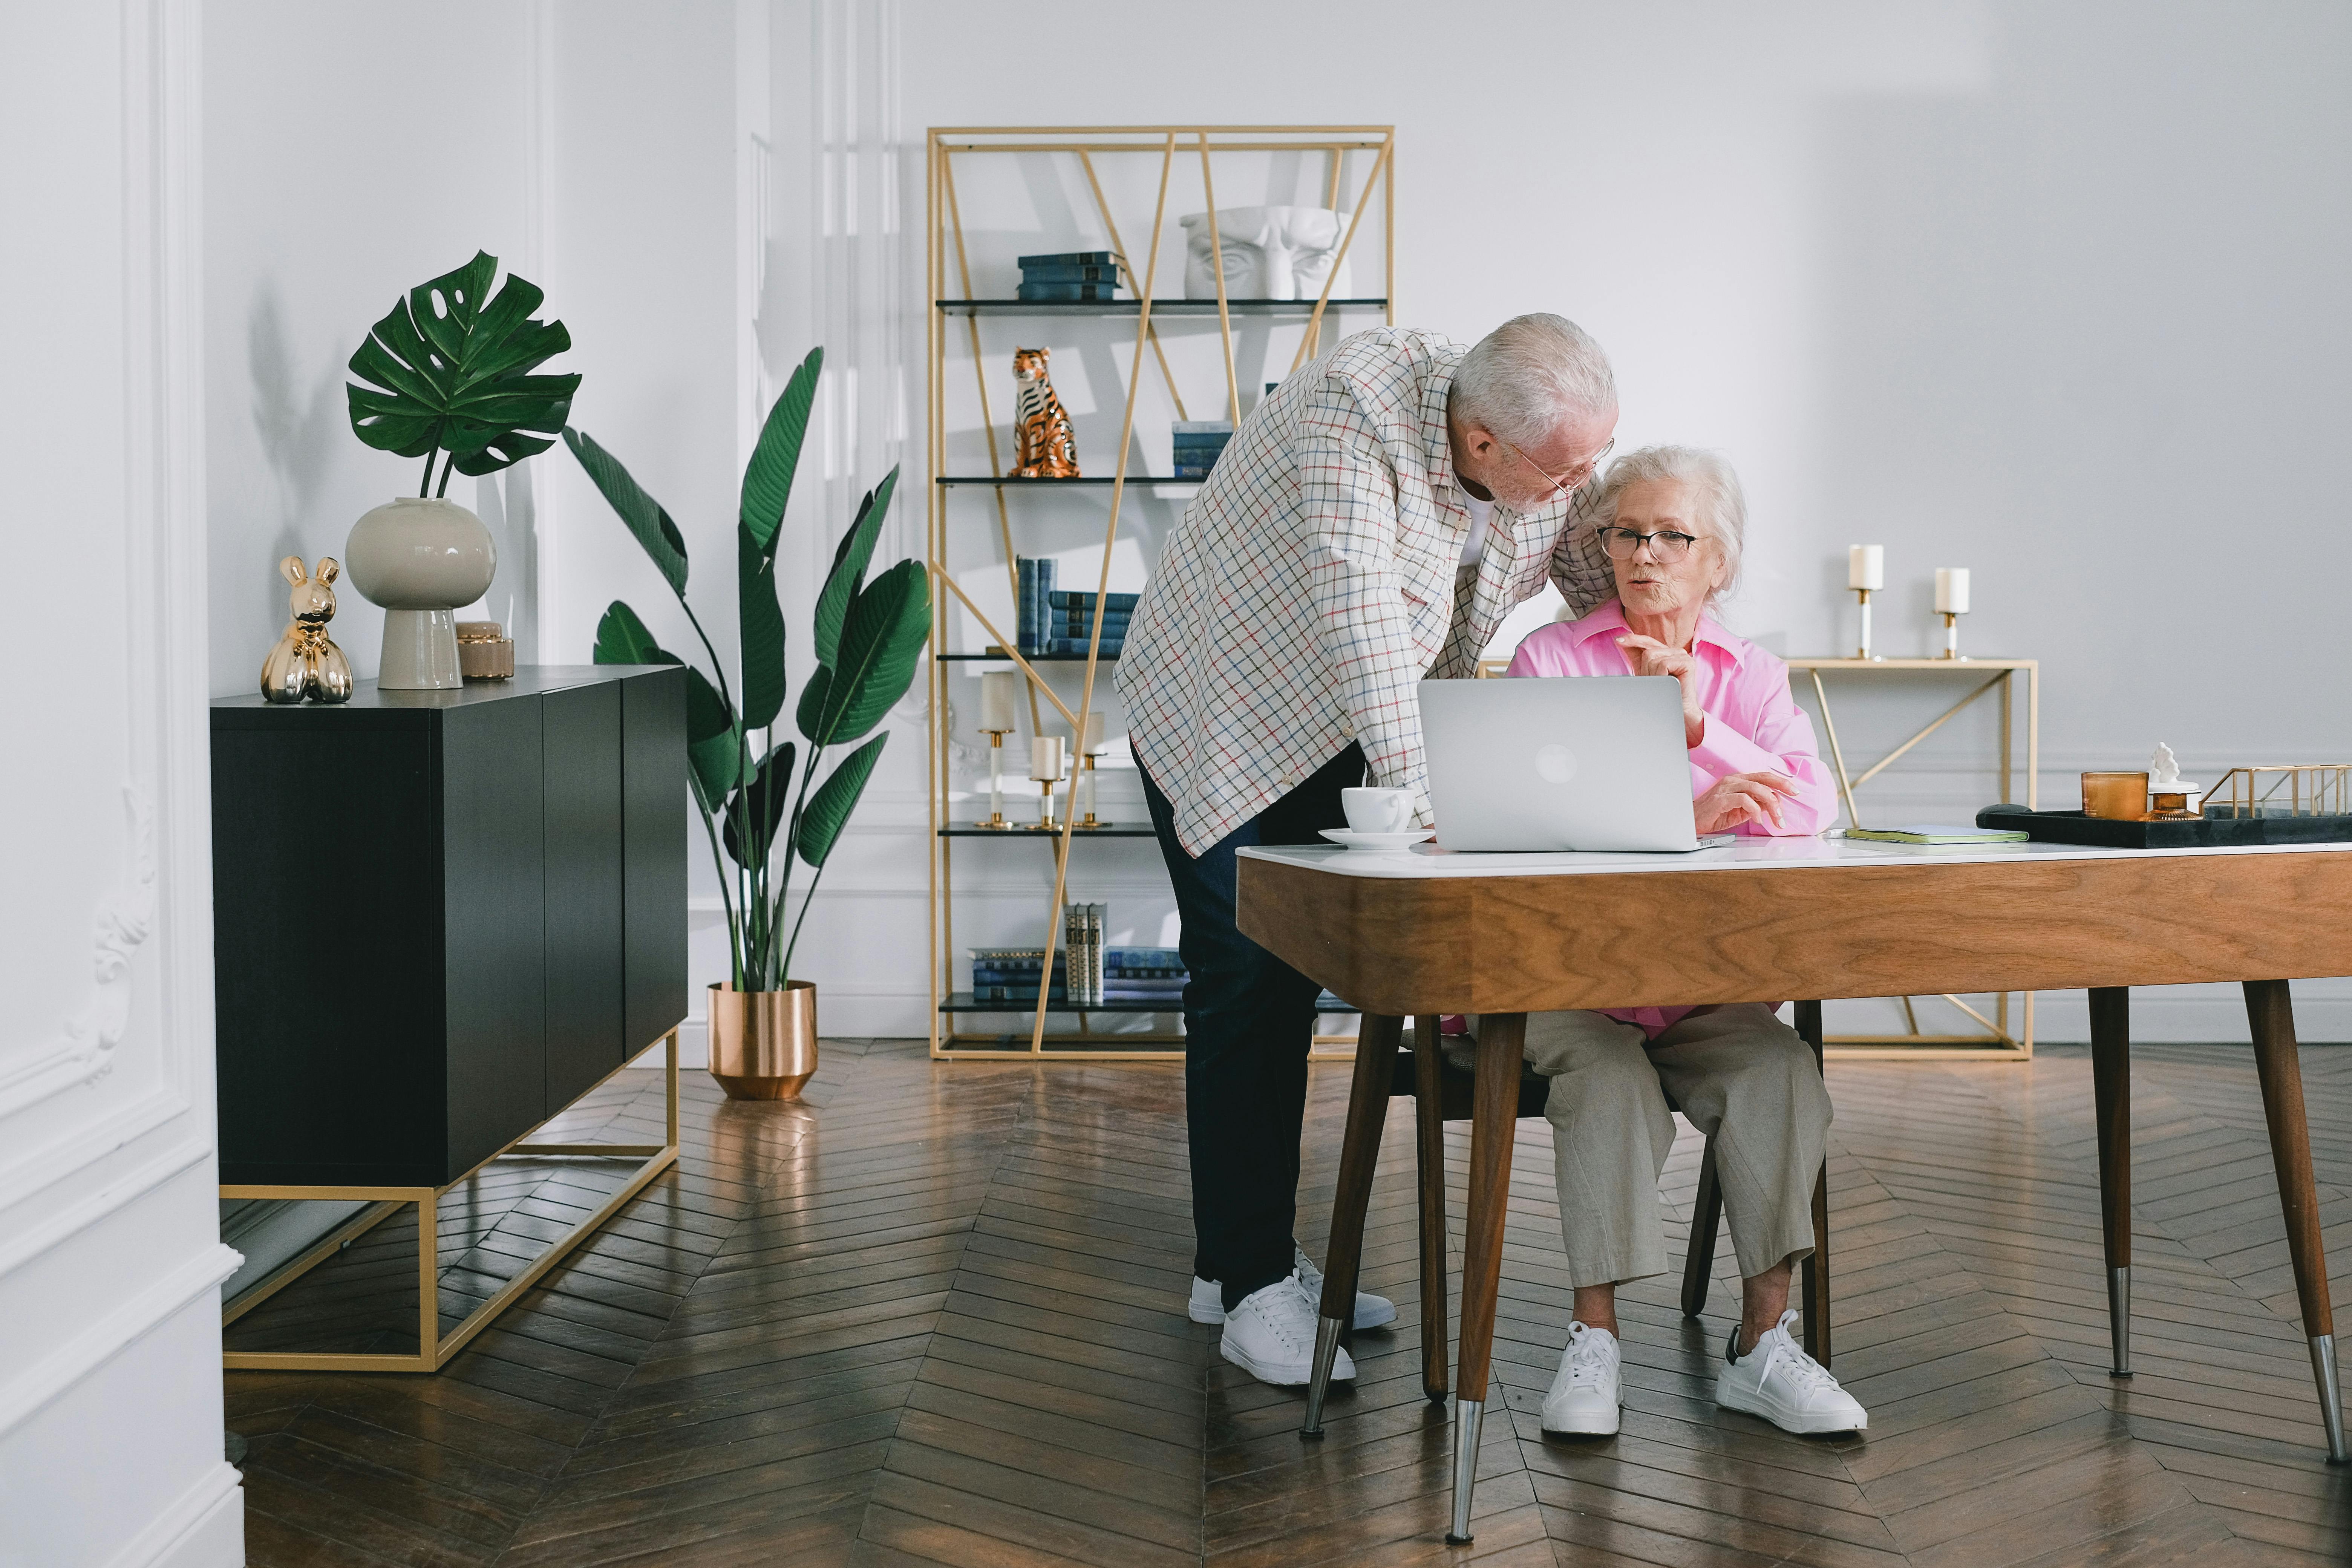 Elderly couple having a conversation | Source: Pexels